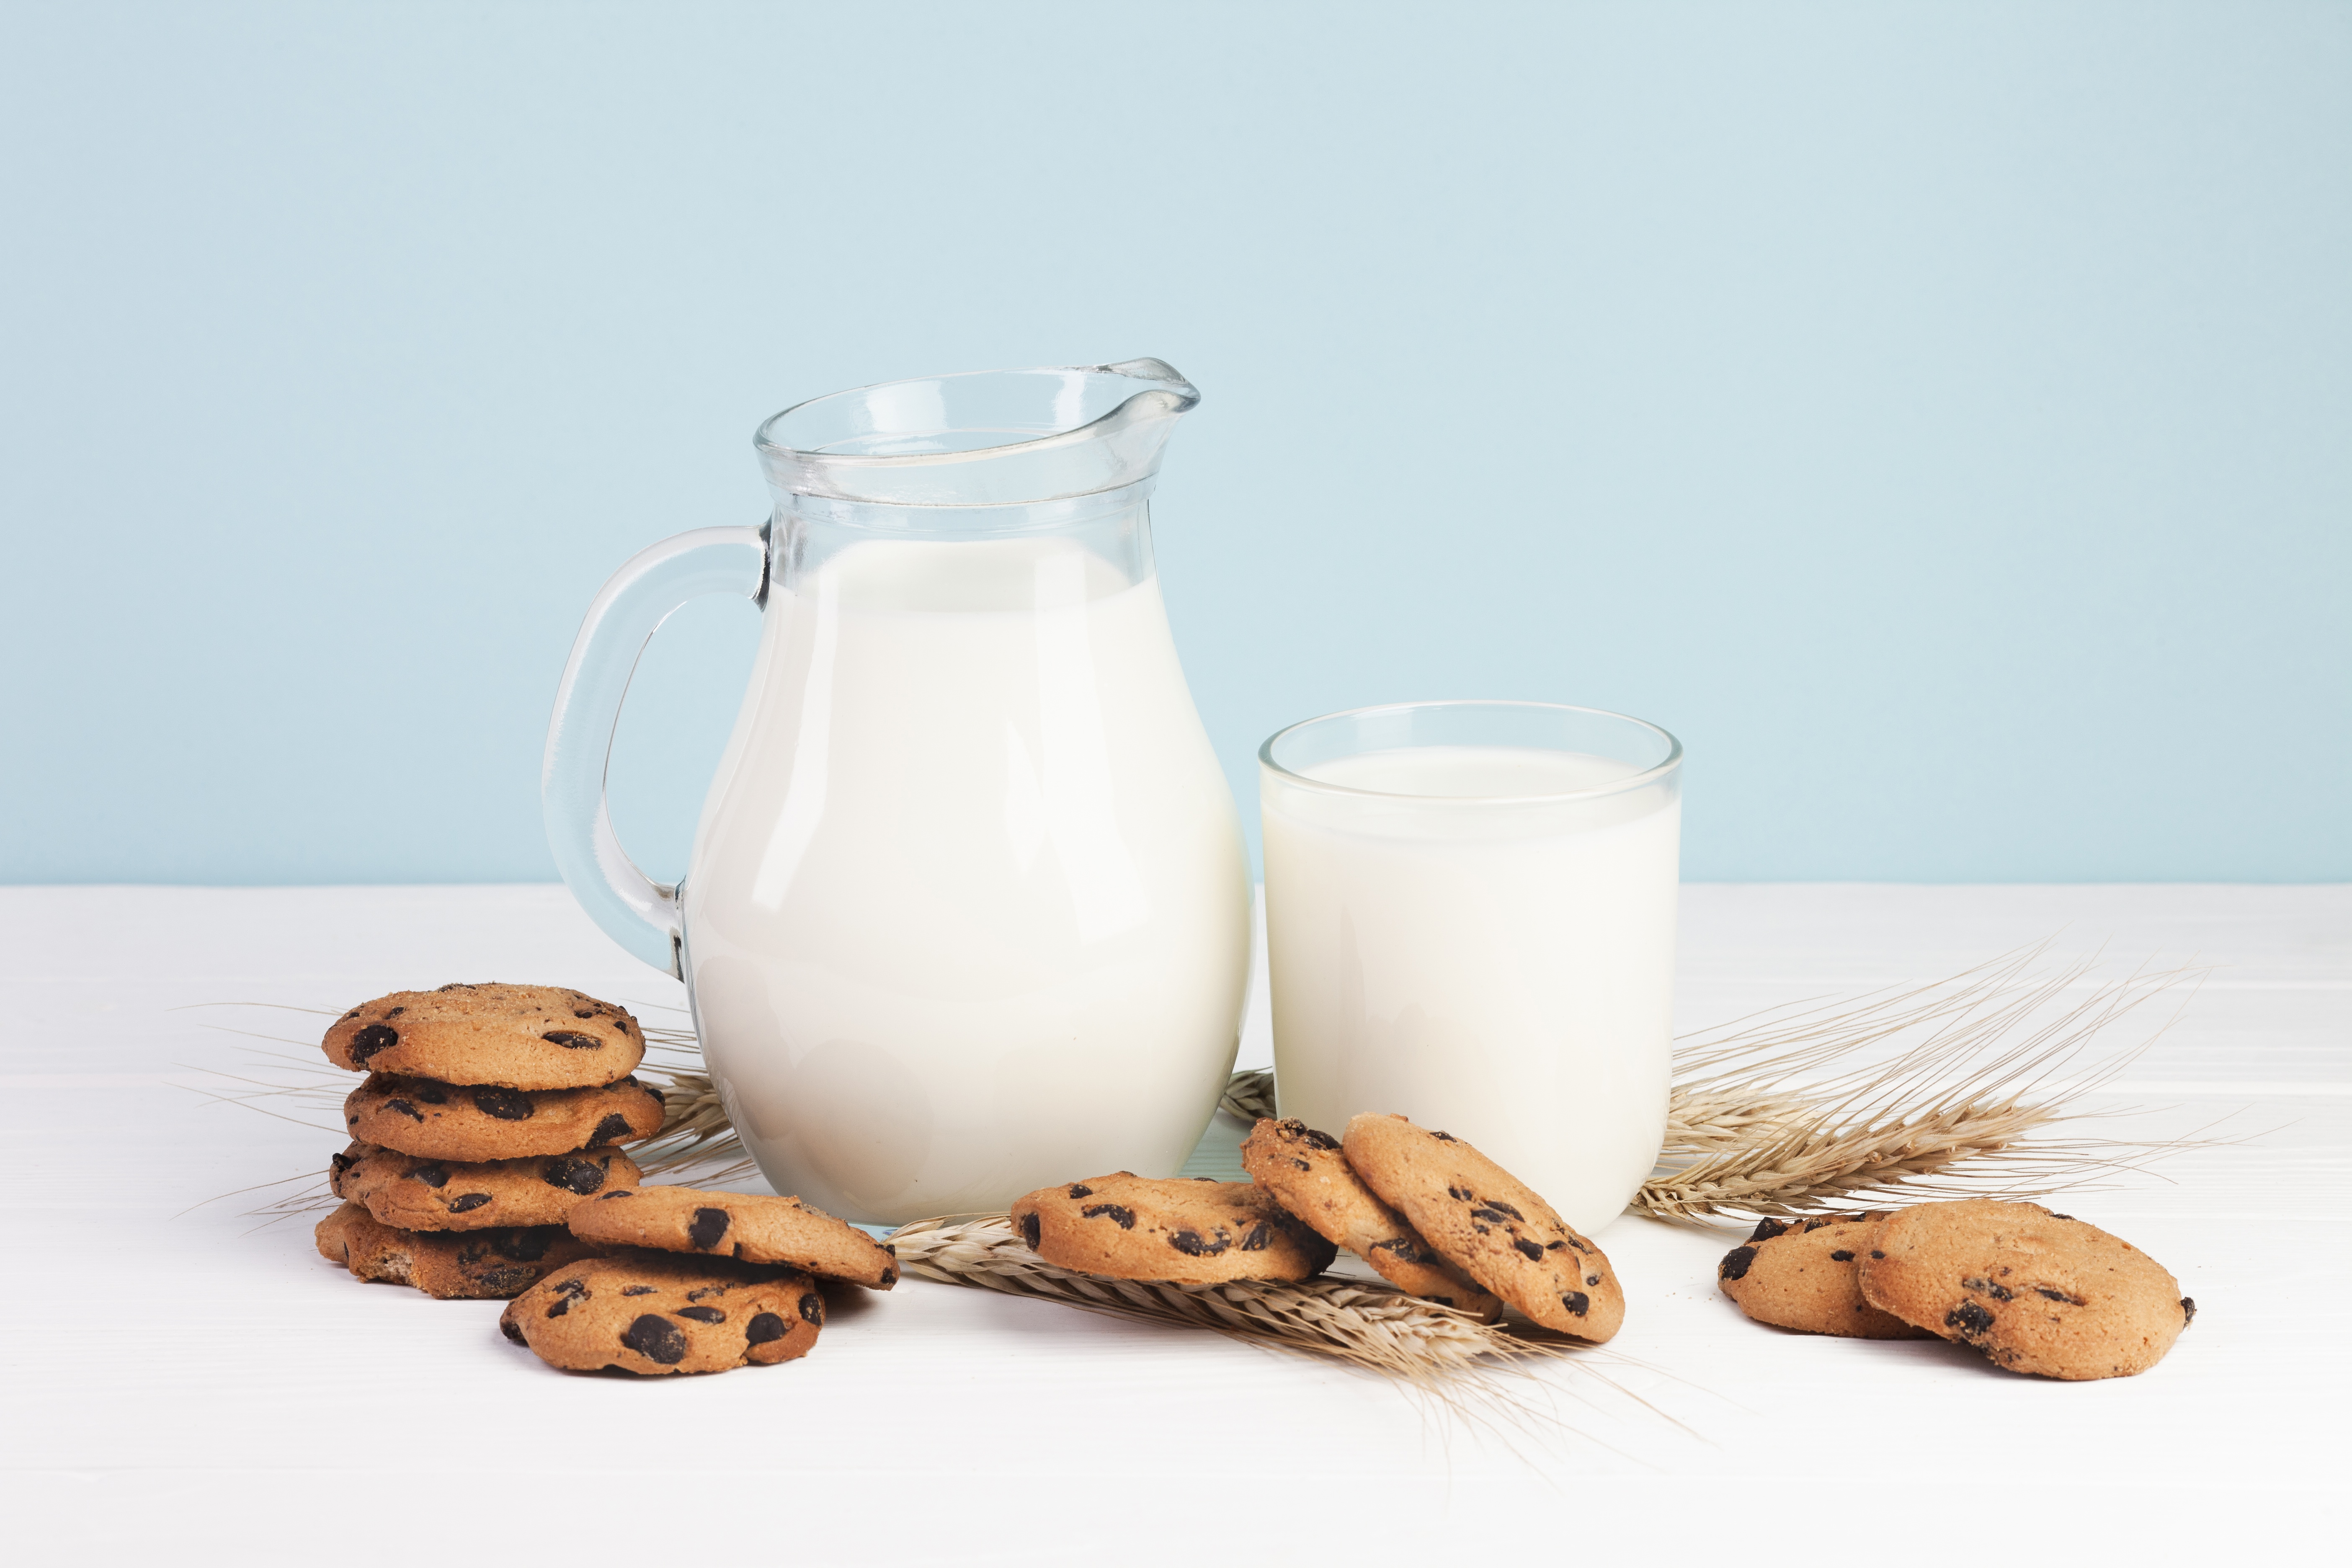 Free download wallpaper Food, Milk, Cookie on your PC desktop